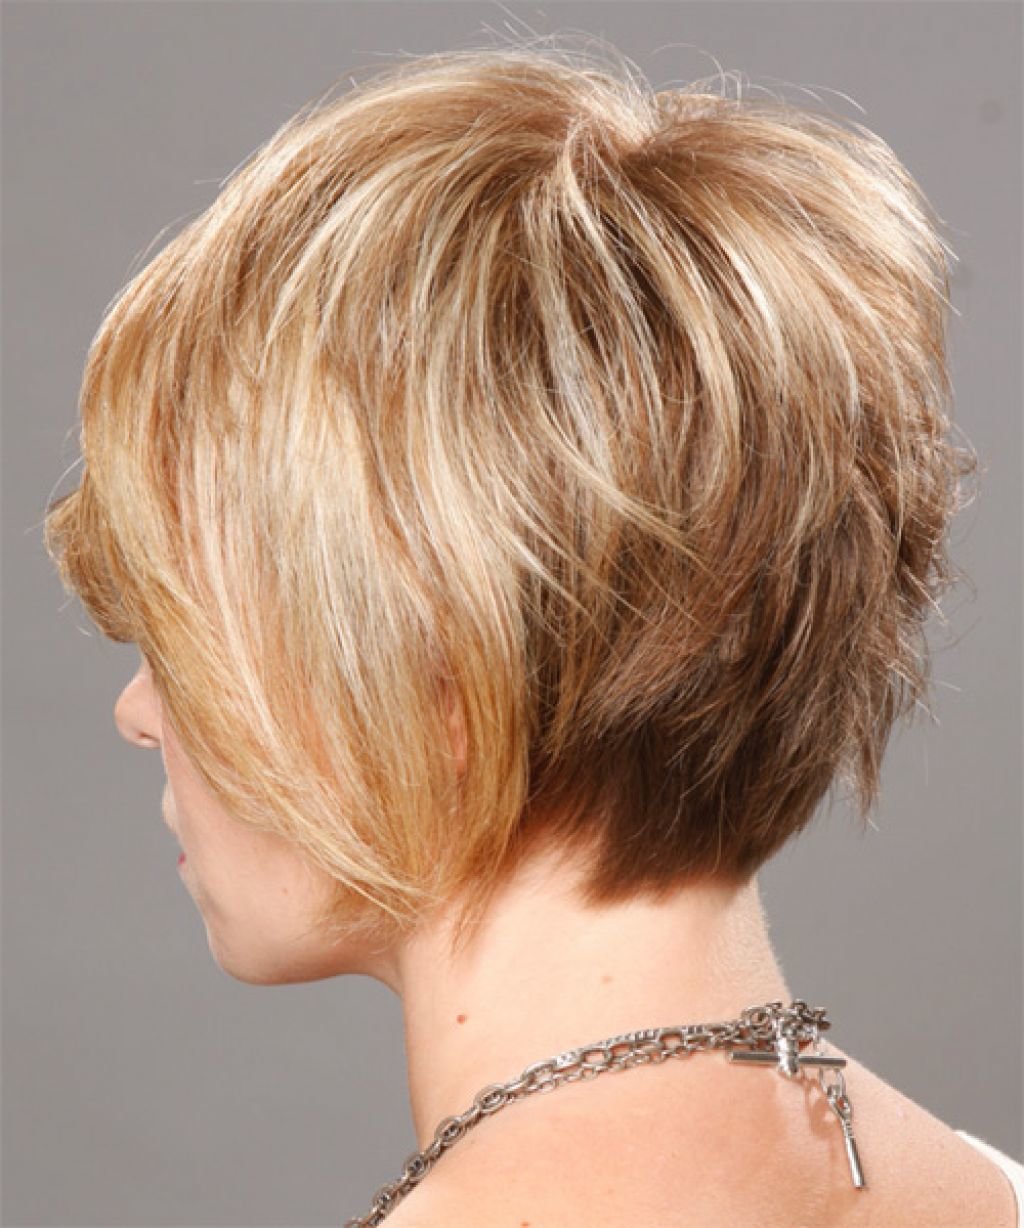 Стрижка боб-каре на короткие волосы — 7 вариантов стильной стрижки на волнистые и прямые волосы, с челкой и без, фото